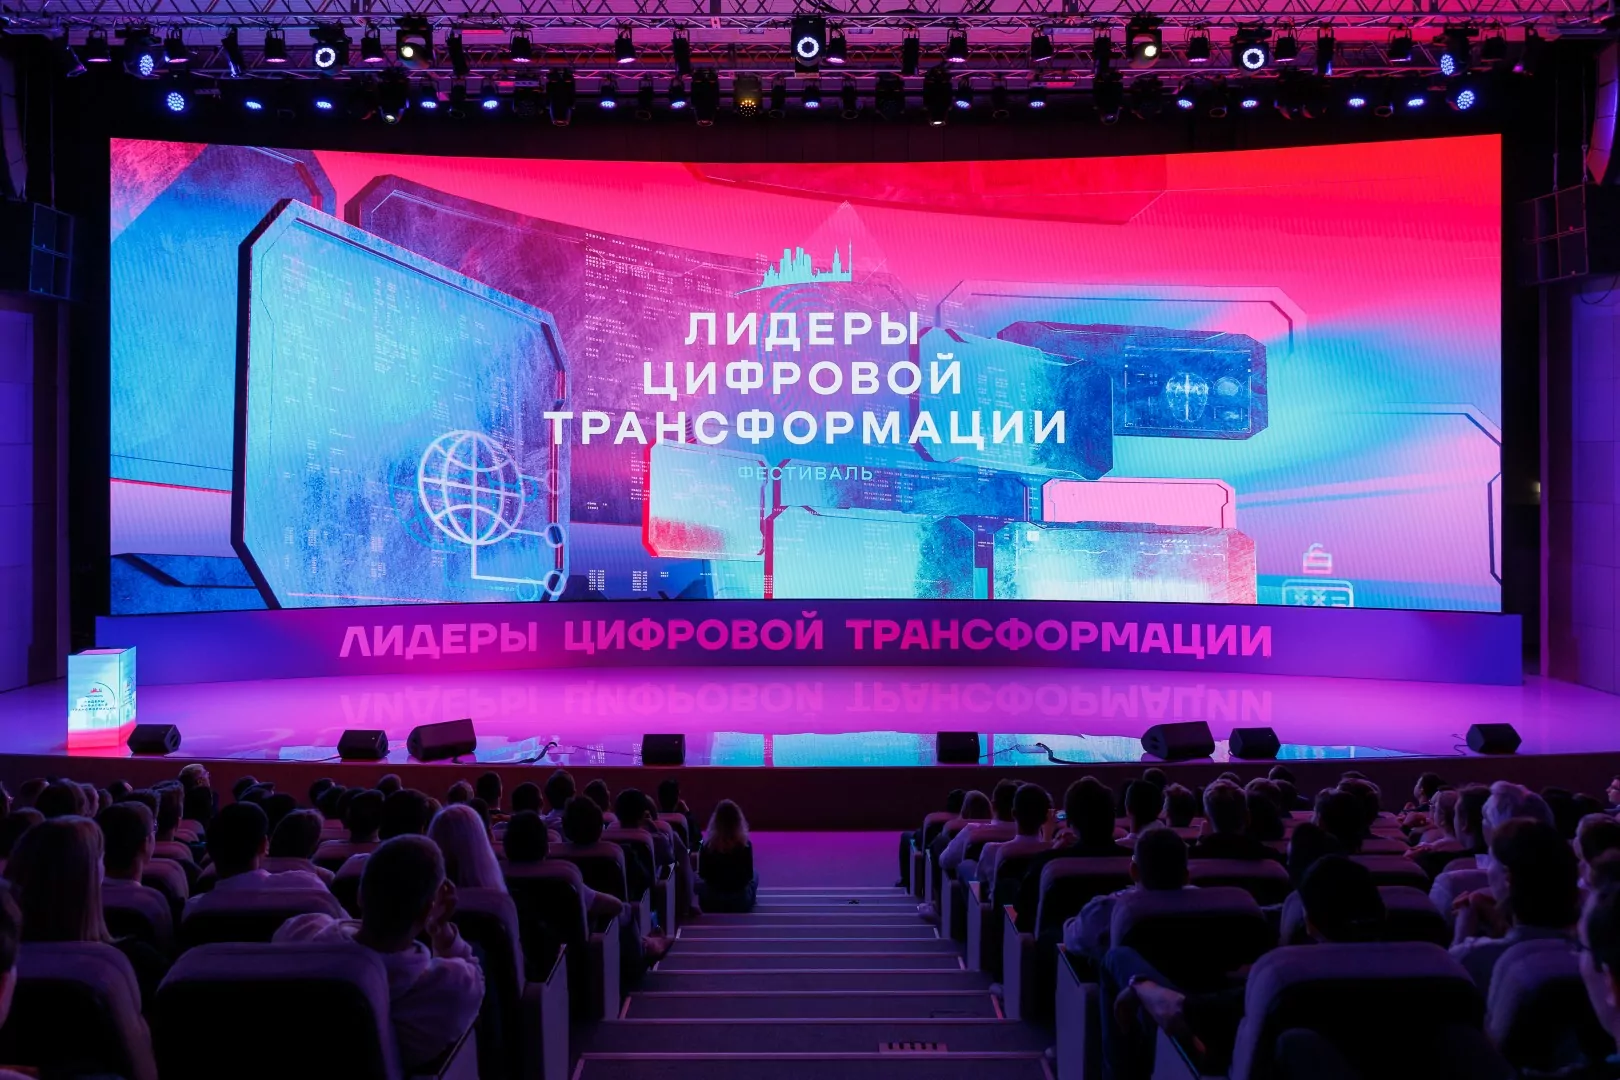 Свыше 2,7 тысячи заявок подано на конкурс мэра Москвы «Лидеры цифровой трансформации», фото